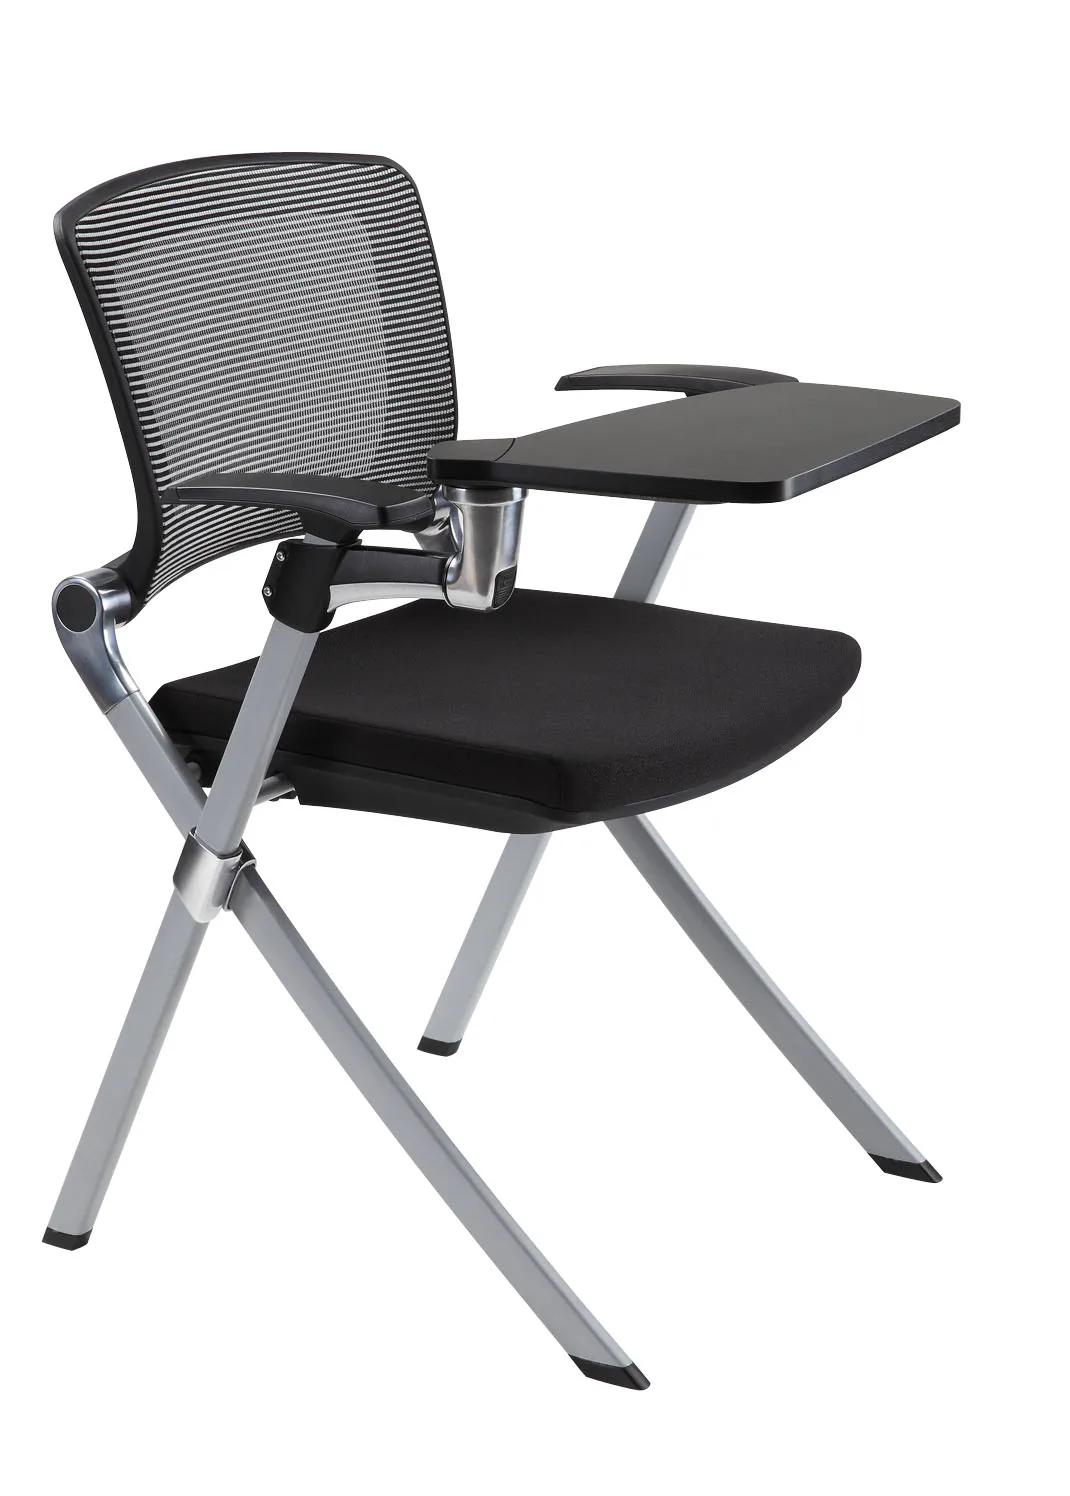 Офисные стулья складные. Стул с пюпитром СП-18-Л/П. Складной стул м4-051 с пюпитром. Стул офисный easy Chair 809 VPU. Стул Sandler с пюпитром.